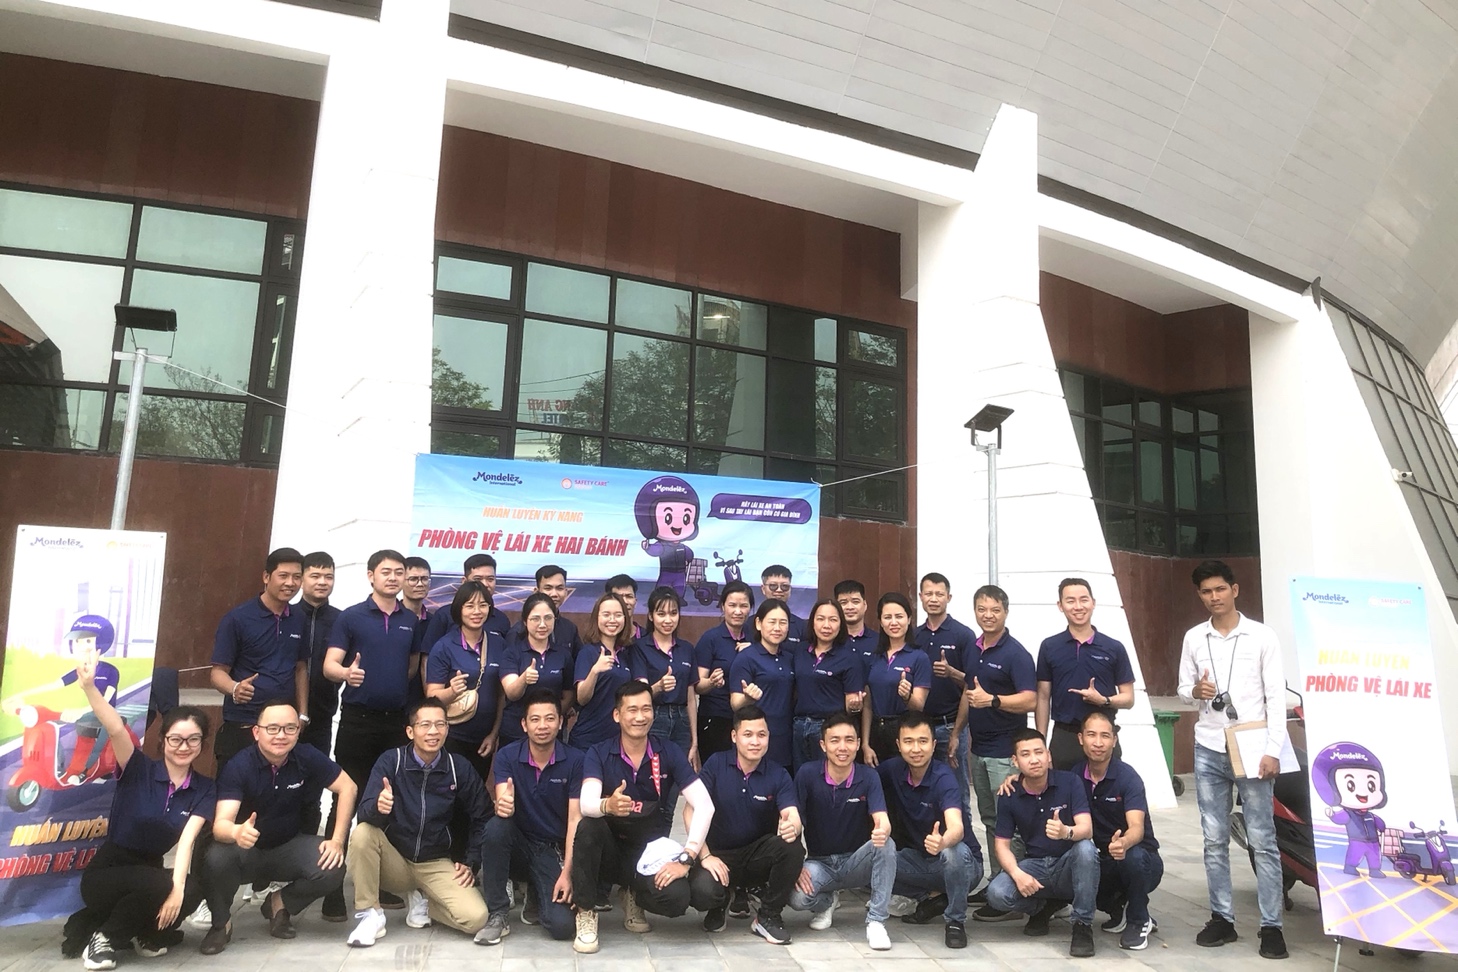 Mondelez Kinh Đô huấn luyện phòng vệ lái xe an toàn cho nhân viên bán hàng - 1